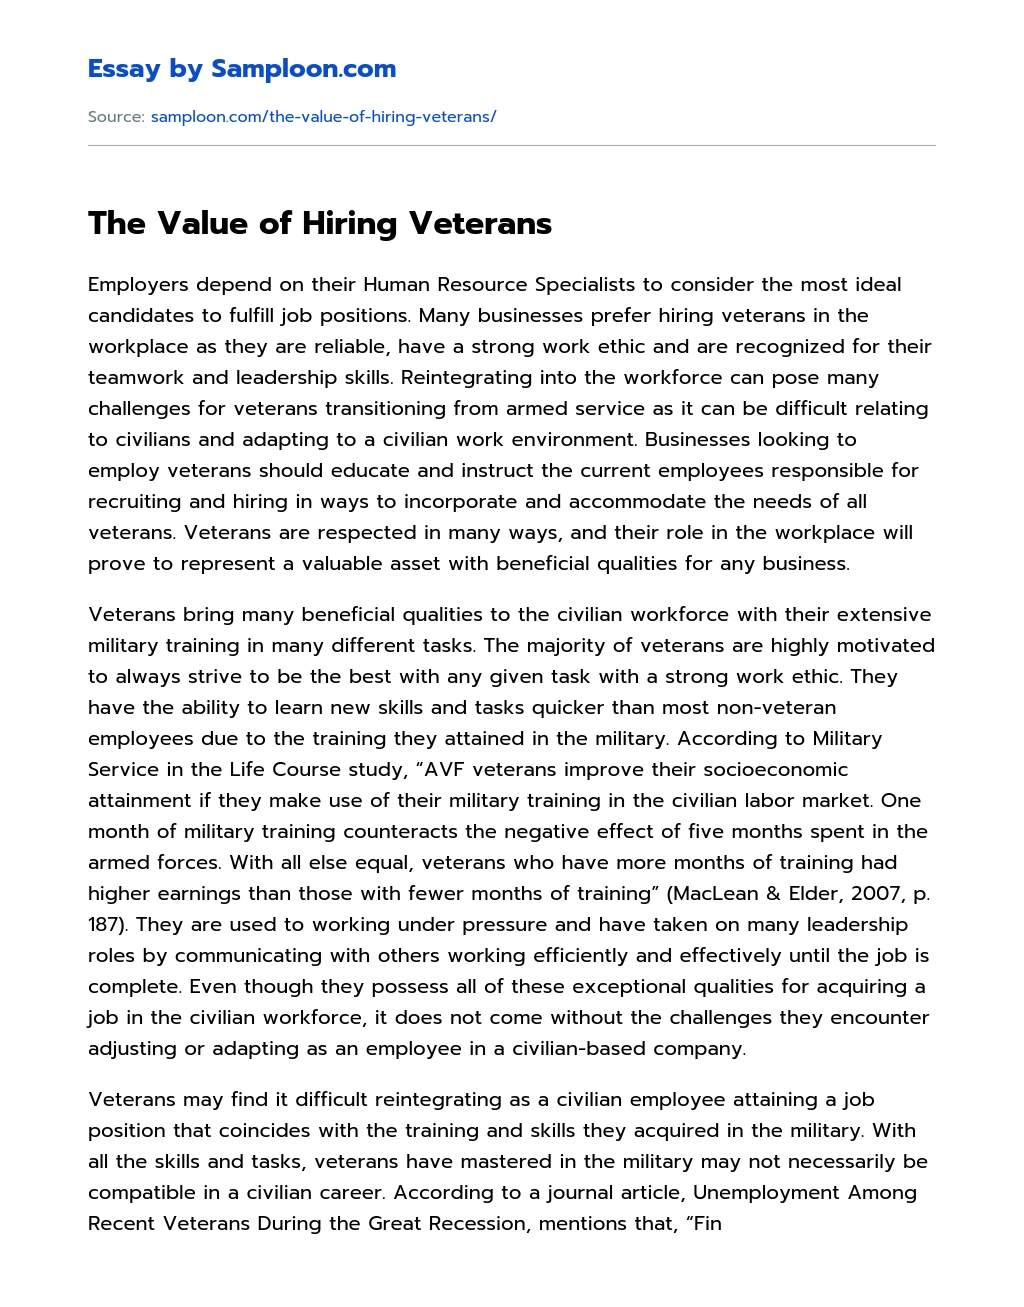 The Value of Hiring Veterans essay